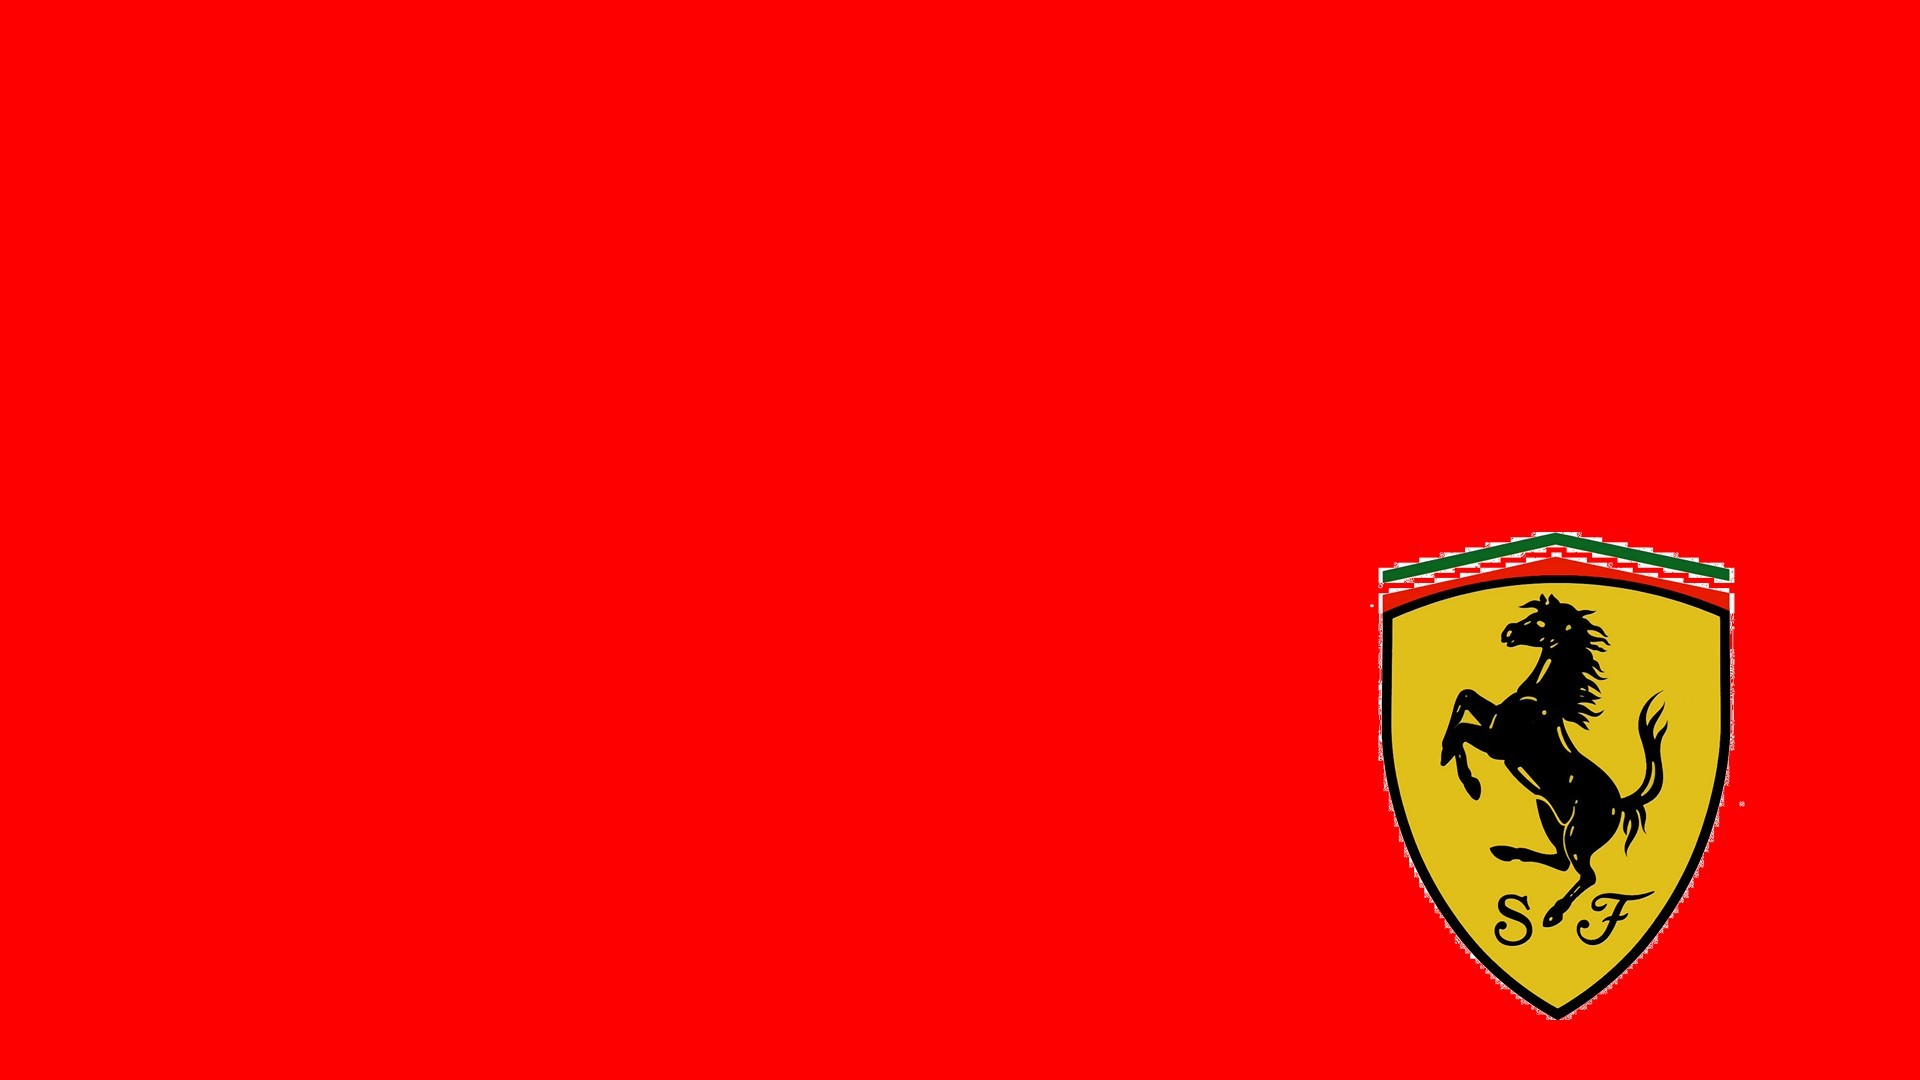 1920x1080 scuderia ferrari logo red background